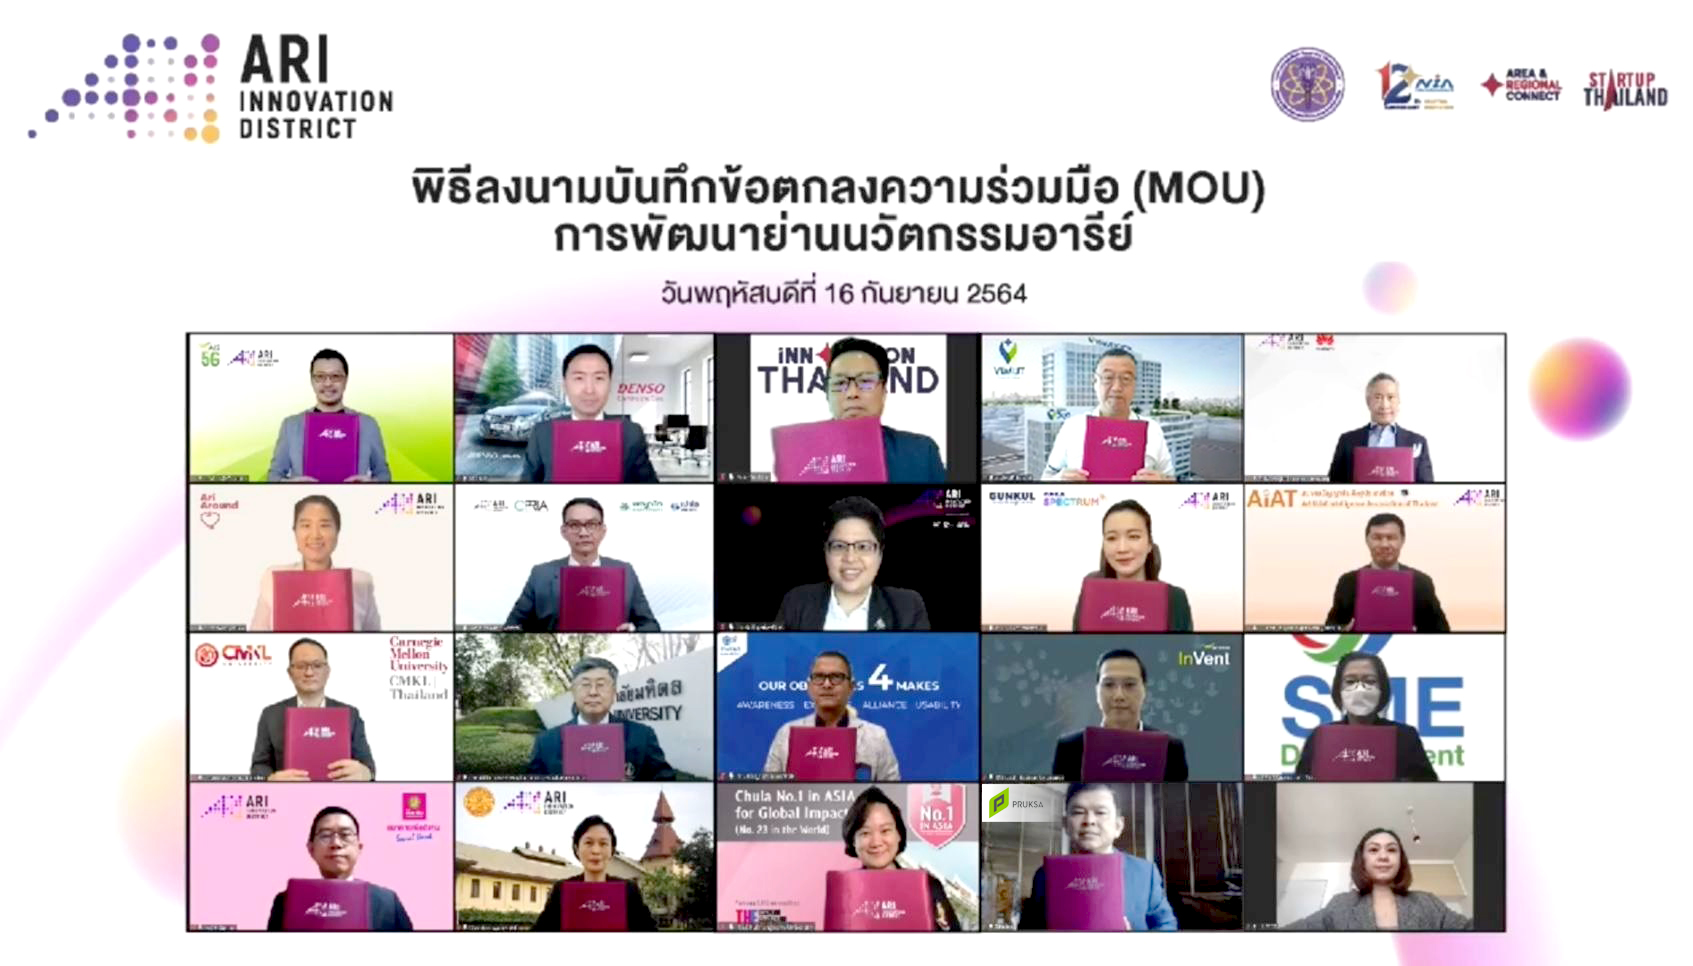 พฤกษา และ รพ.วิมุต ผนึก สำนักงานนวัตกรรมแห่งชาติ พร้อมองค์กรพันธมิตรรวม 18 แห่ง ดันอารีย์เป็นย่านนวัตกรรมเอไอแห่งแรกในไทย